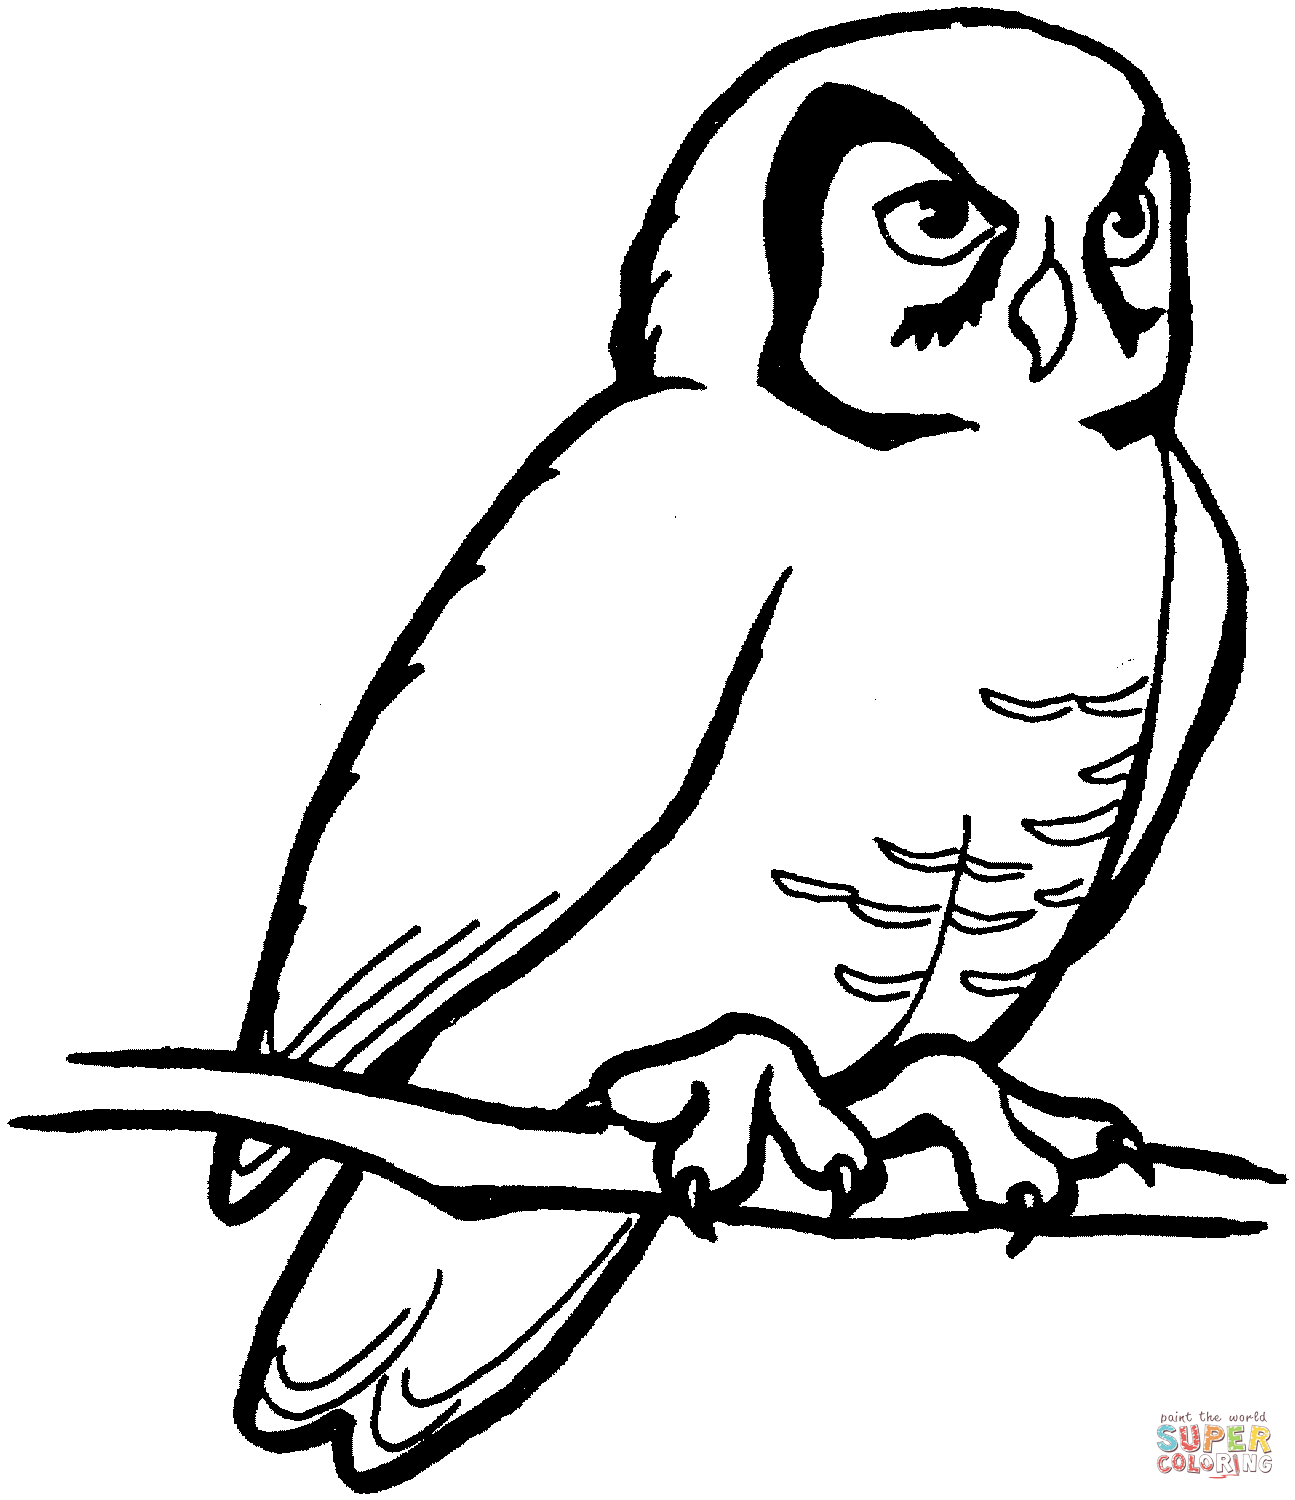 Barn Owl coloring #17, Download drawings